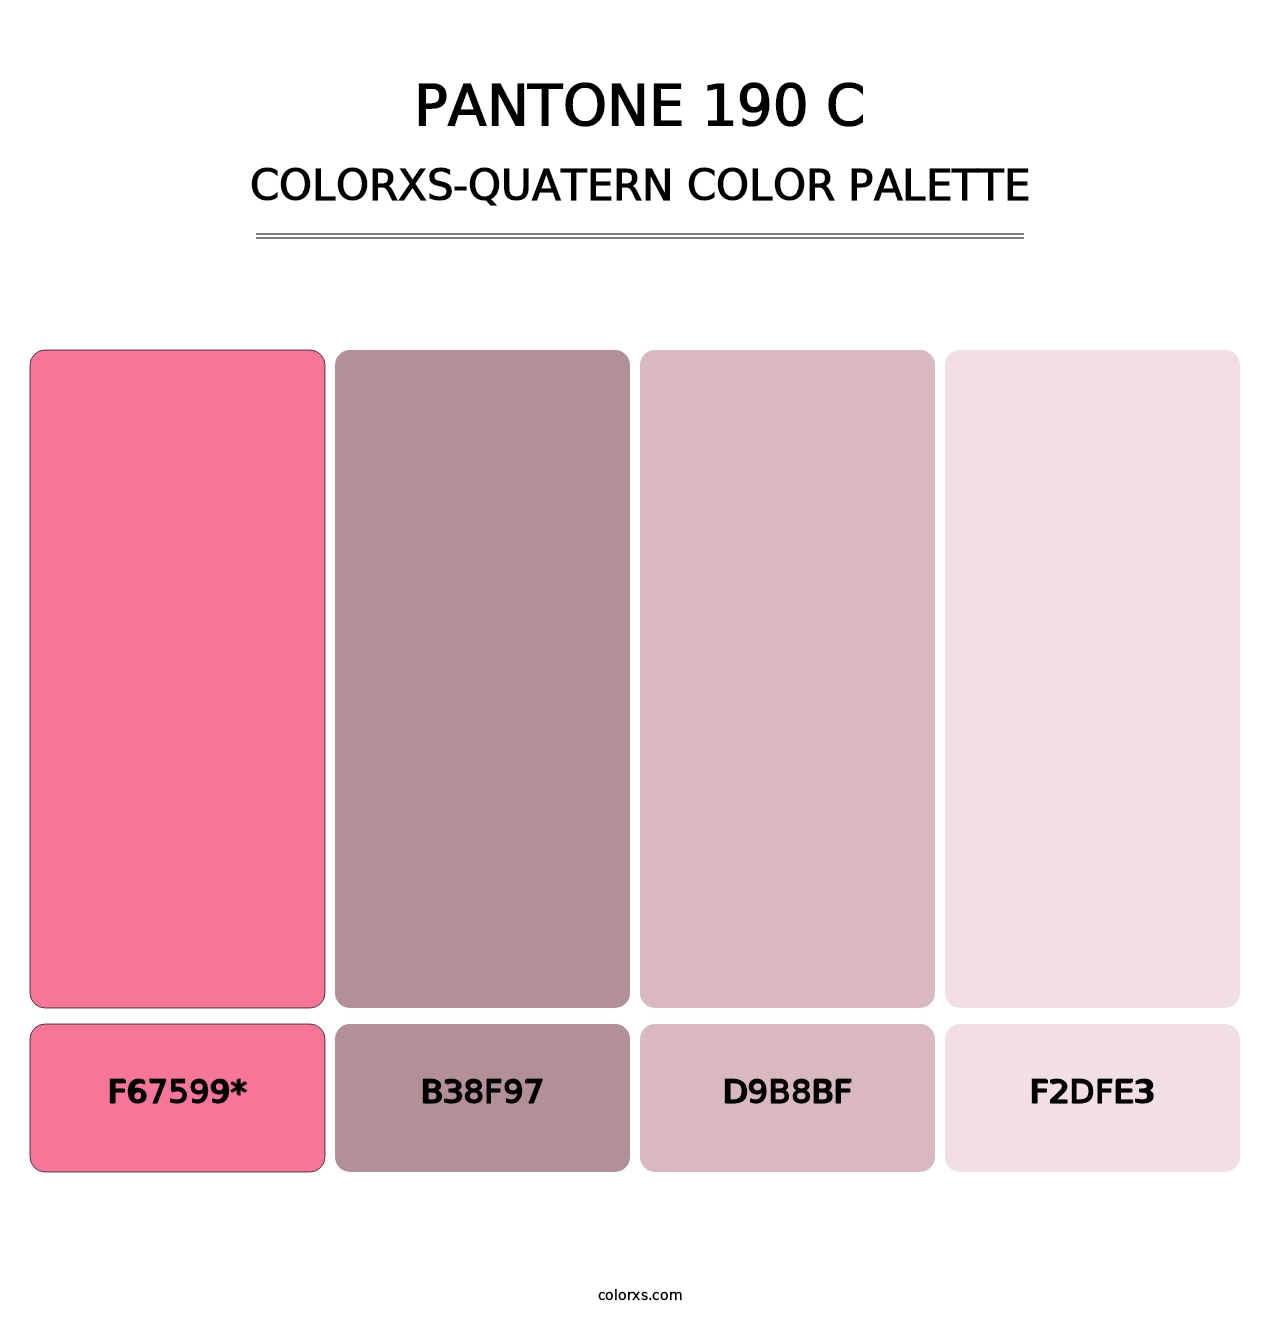 PANTONE 190 C - Colorxs Quatern Palette